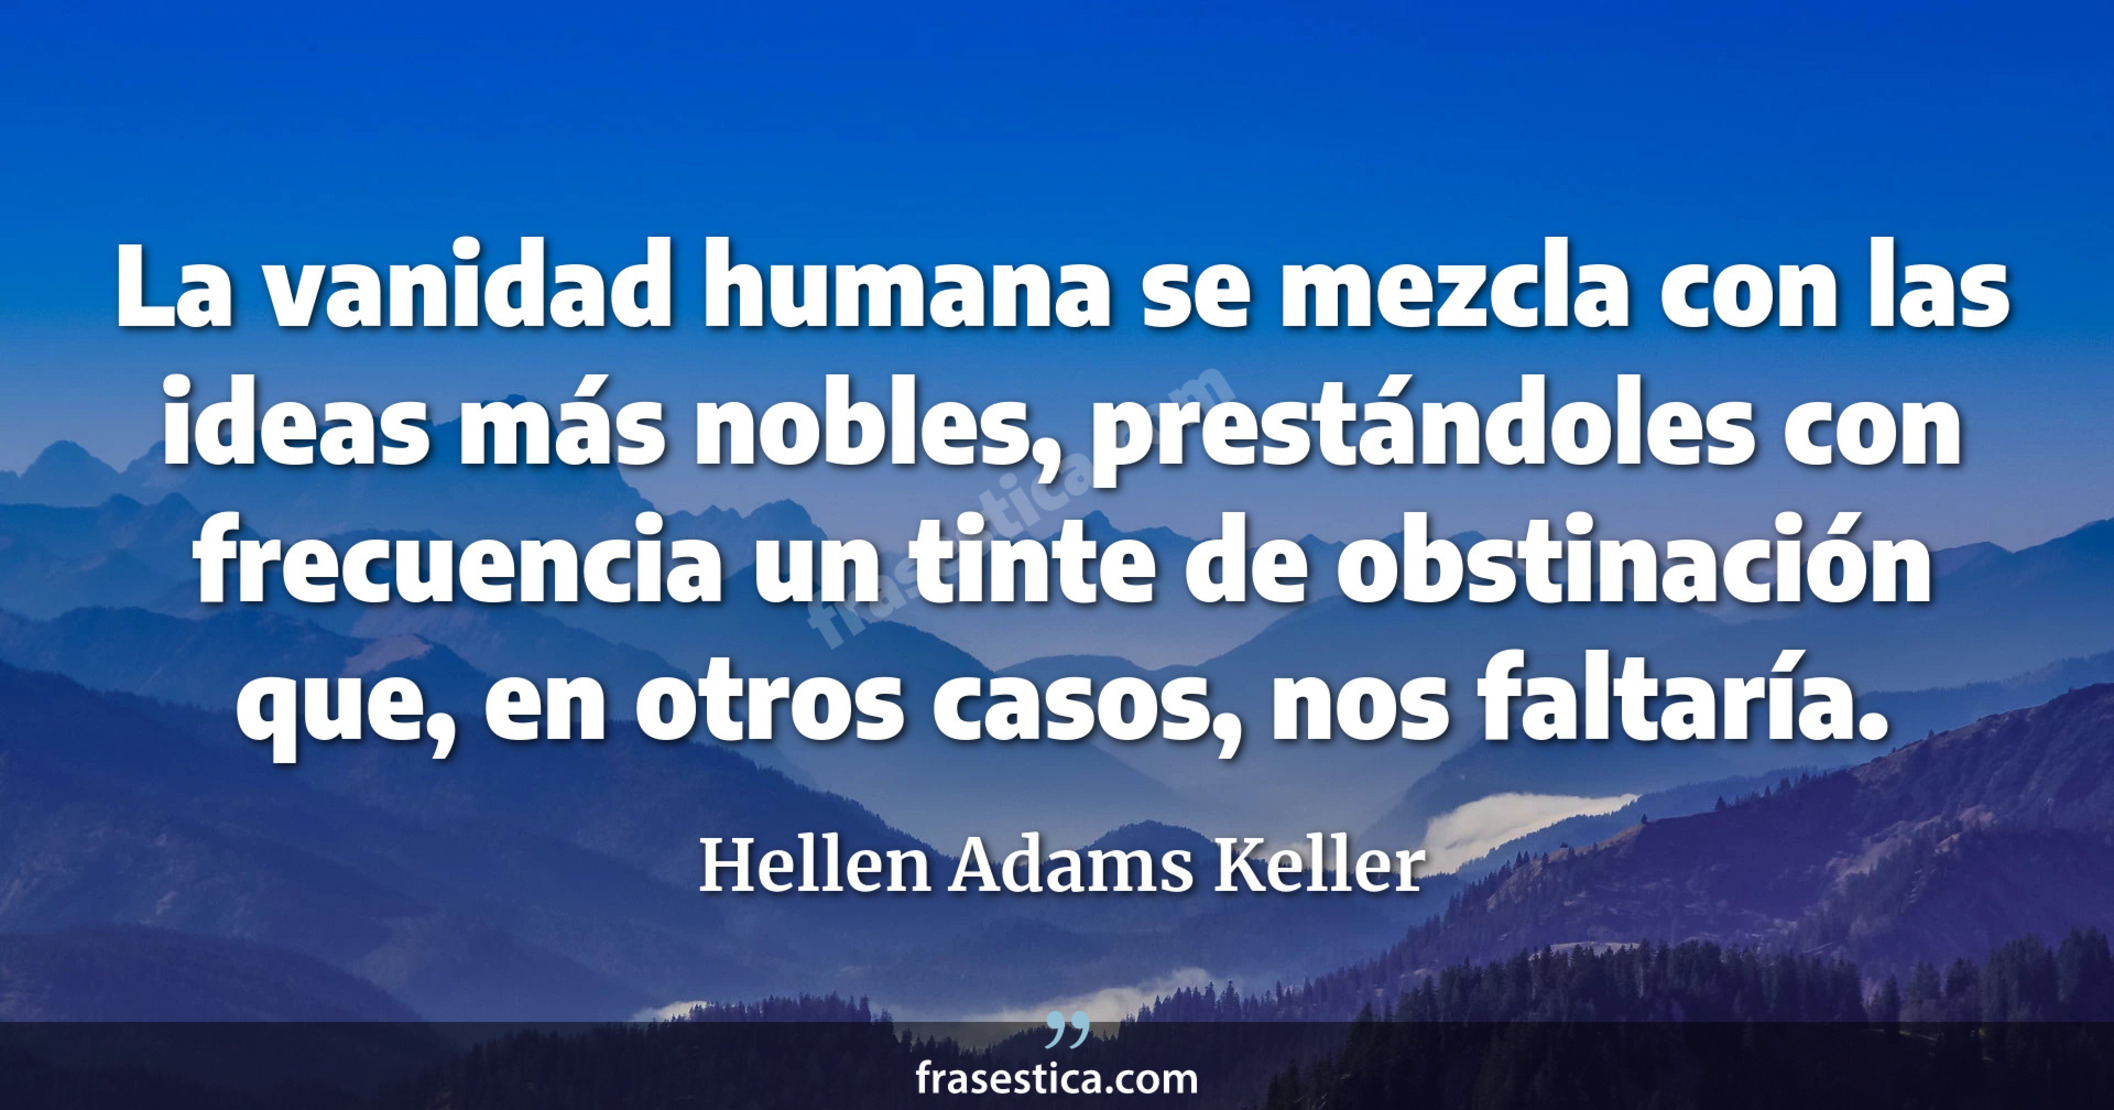 La vanidad humana se mezcla con las ideas más nobles, prestándoles con frecuencia un tinte de obstinación que, en otros casos, nos faltaría. - Hellen Adams Keller